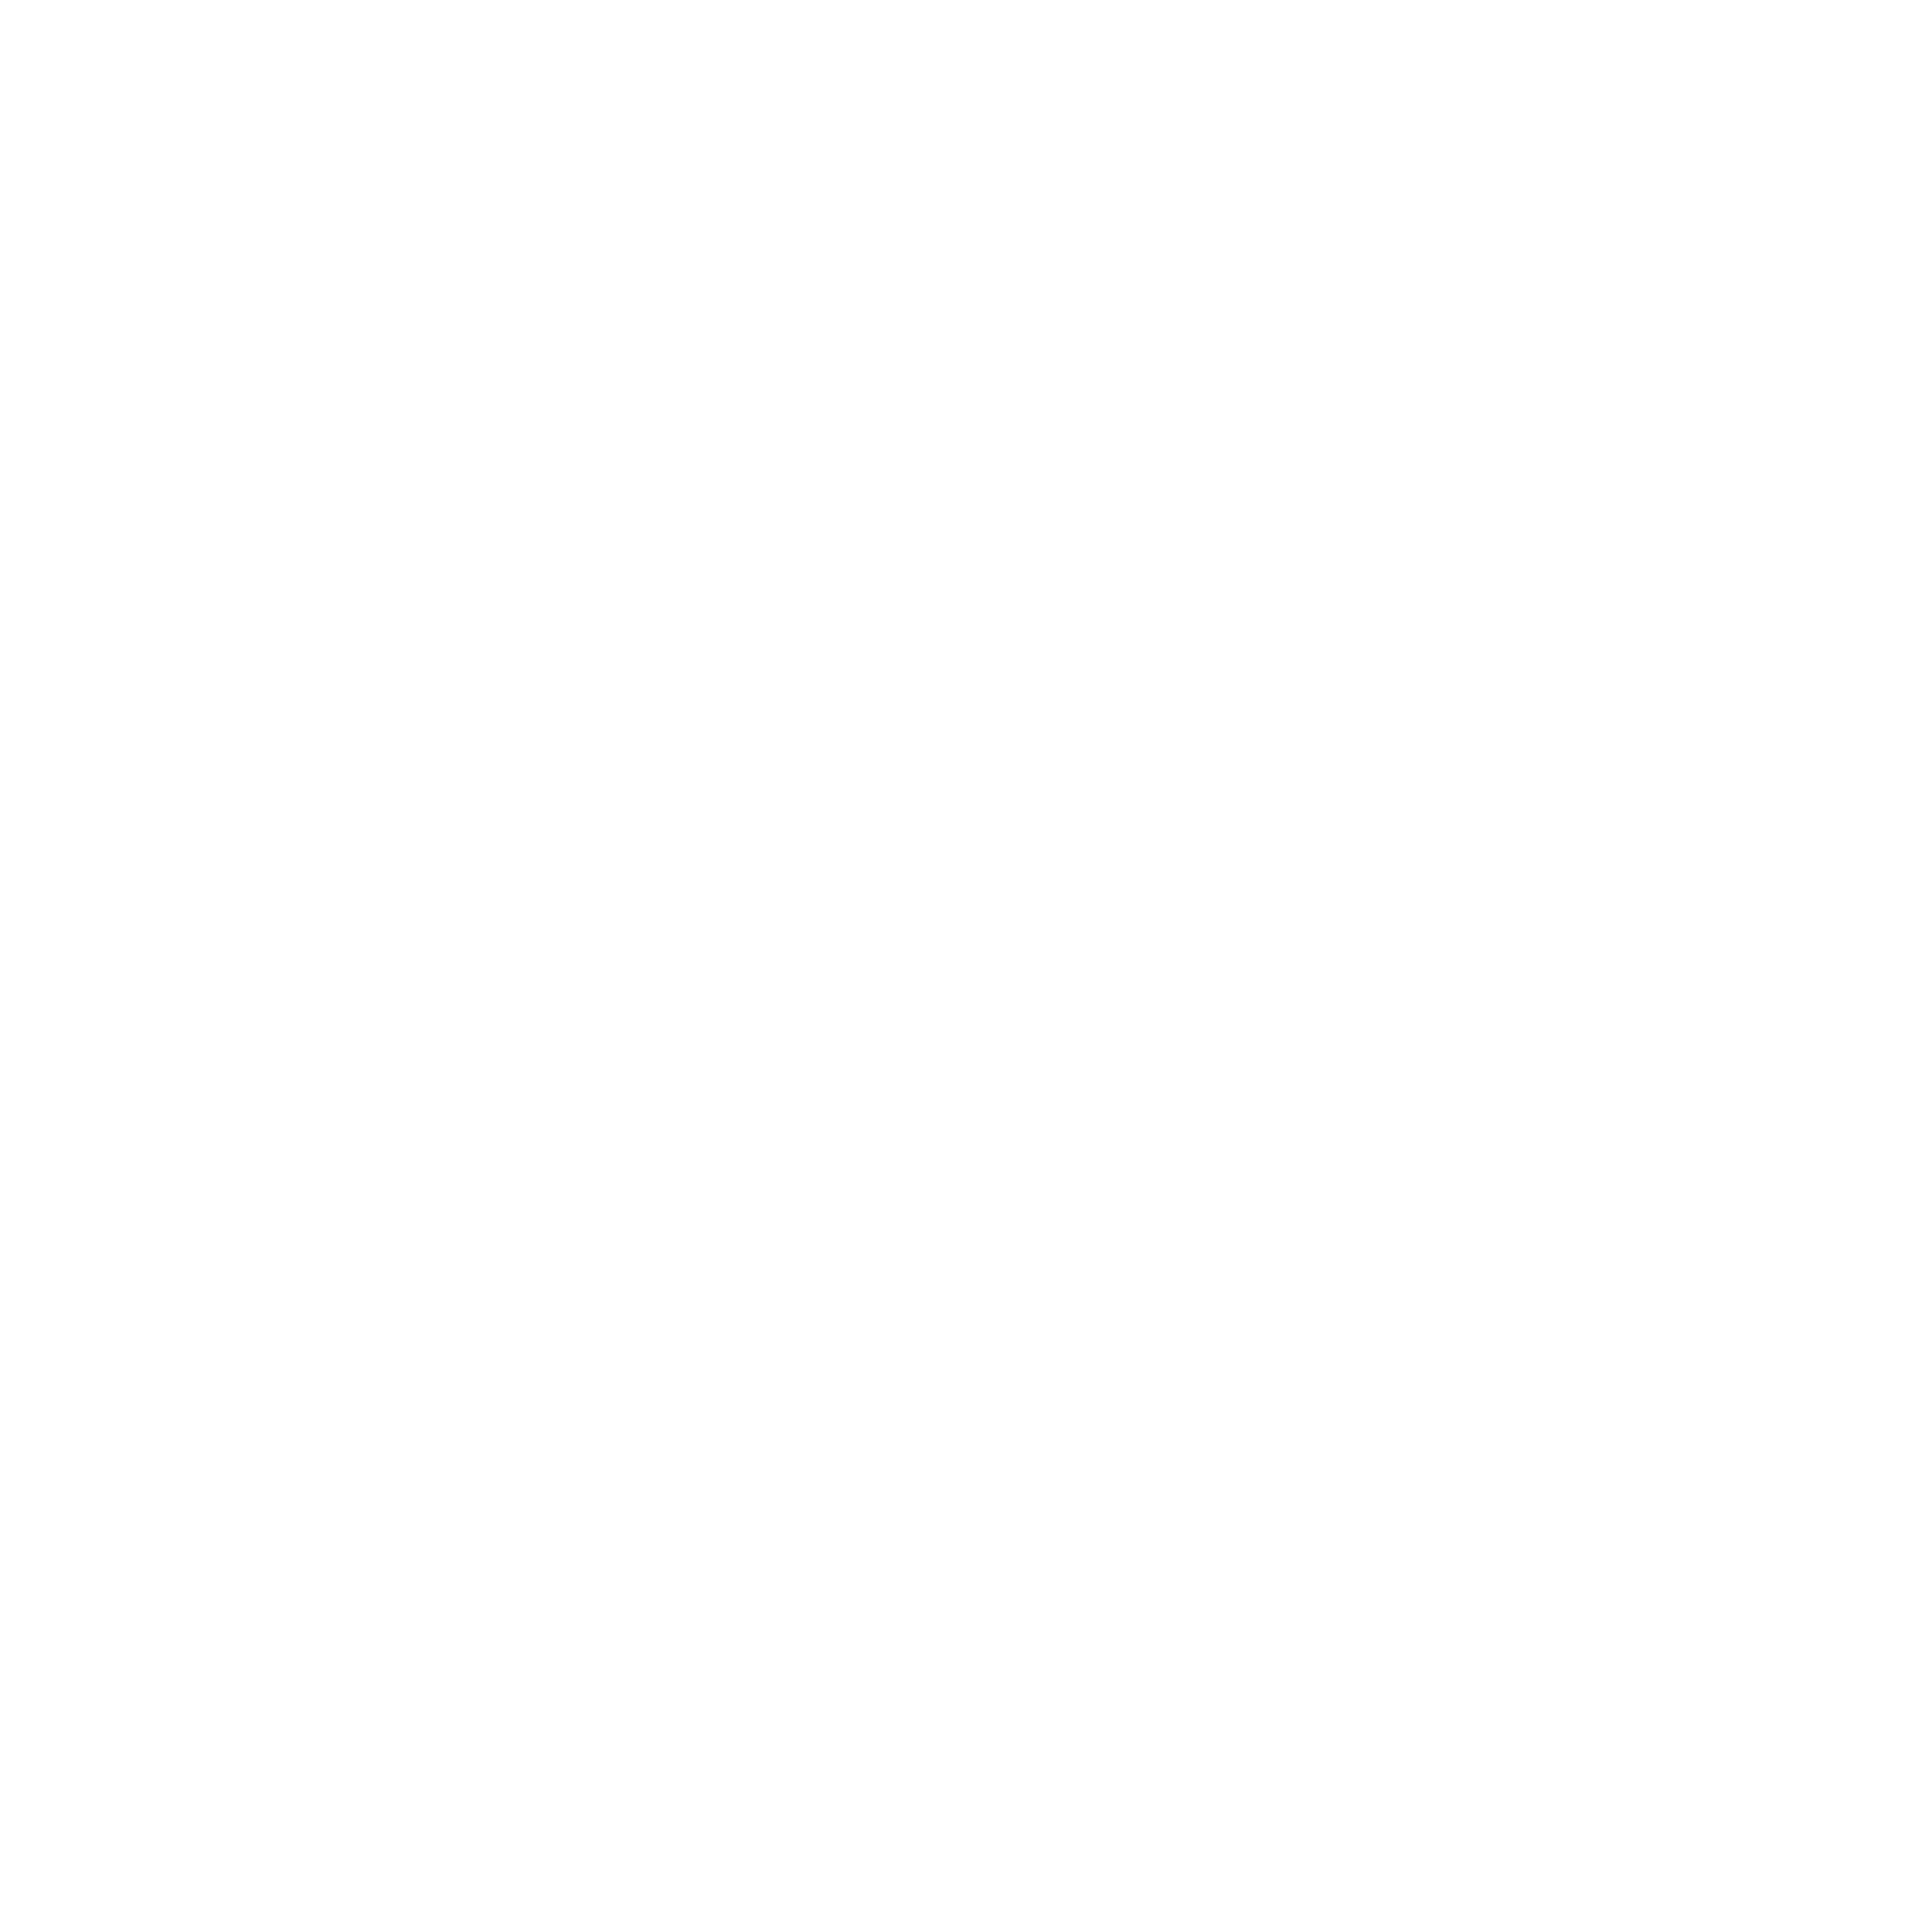 Ninety-nine media